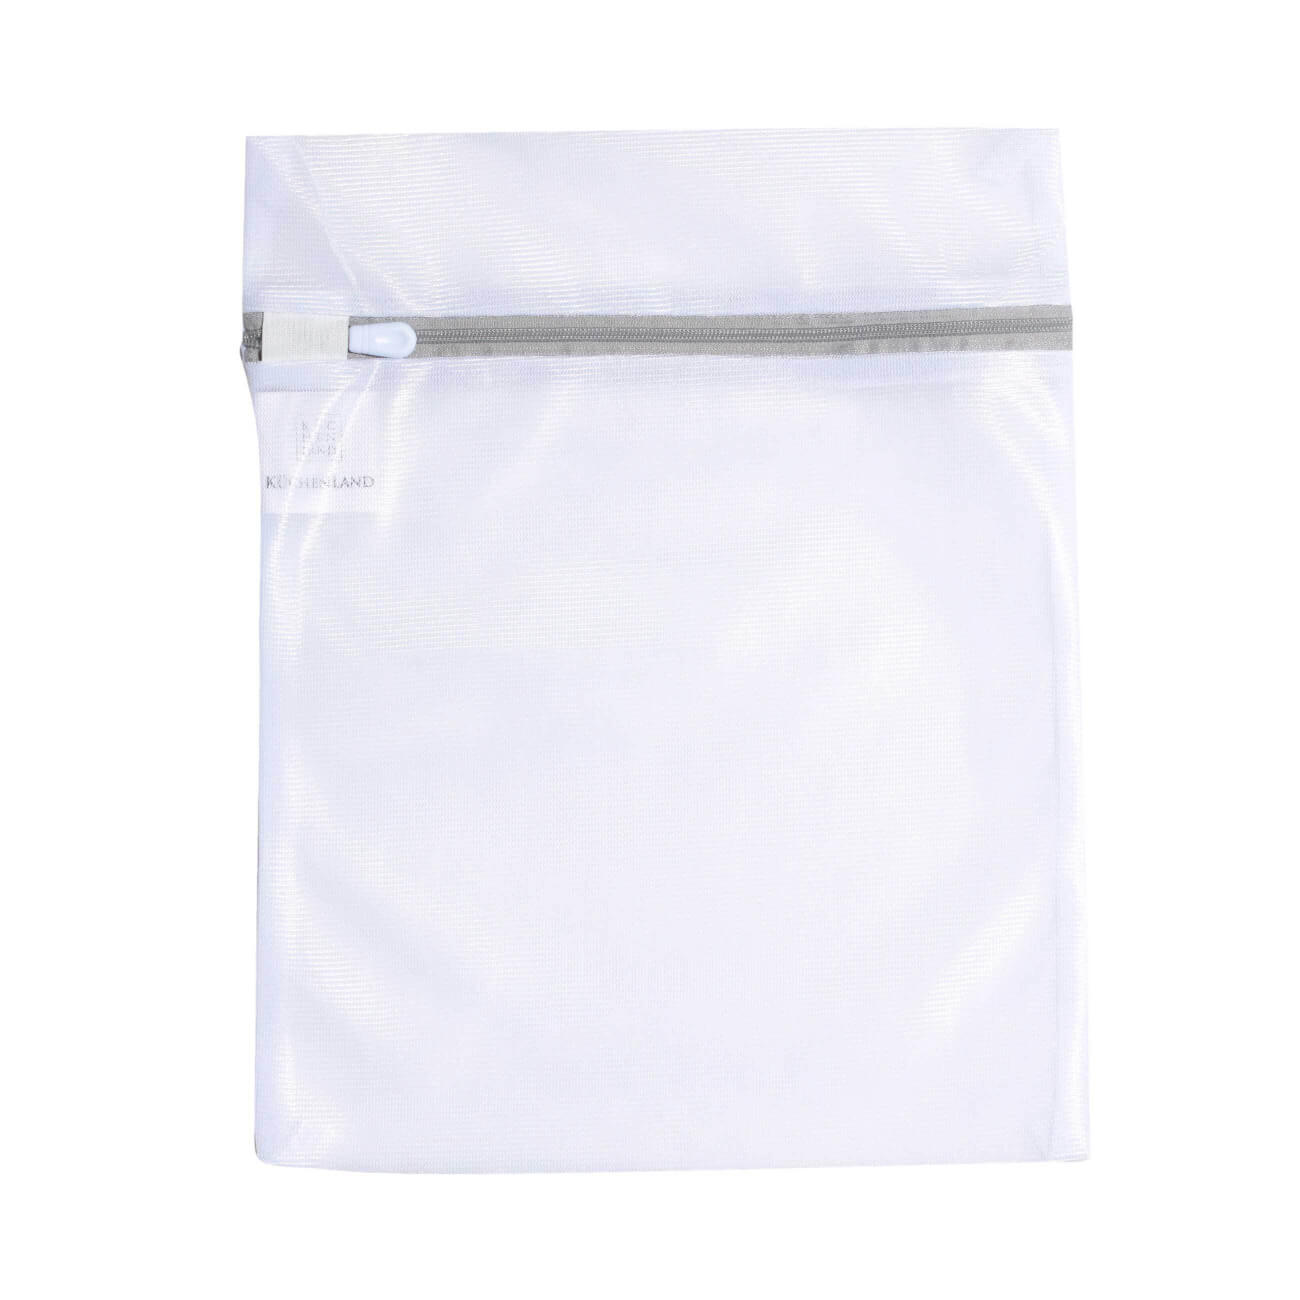 Мешок для стирки нижнего белья, 25х30 см, полиэстер, бело-серый, Safety plus мешок для стирки одежды 40х50 см полиэстер safety plus